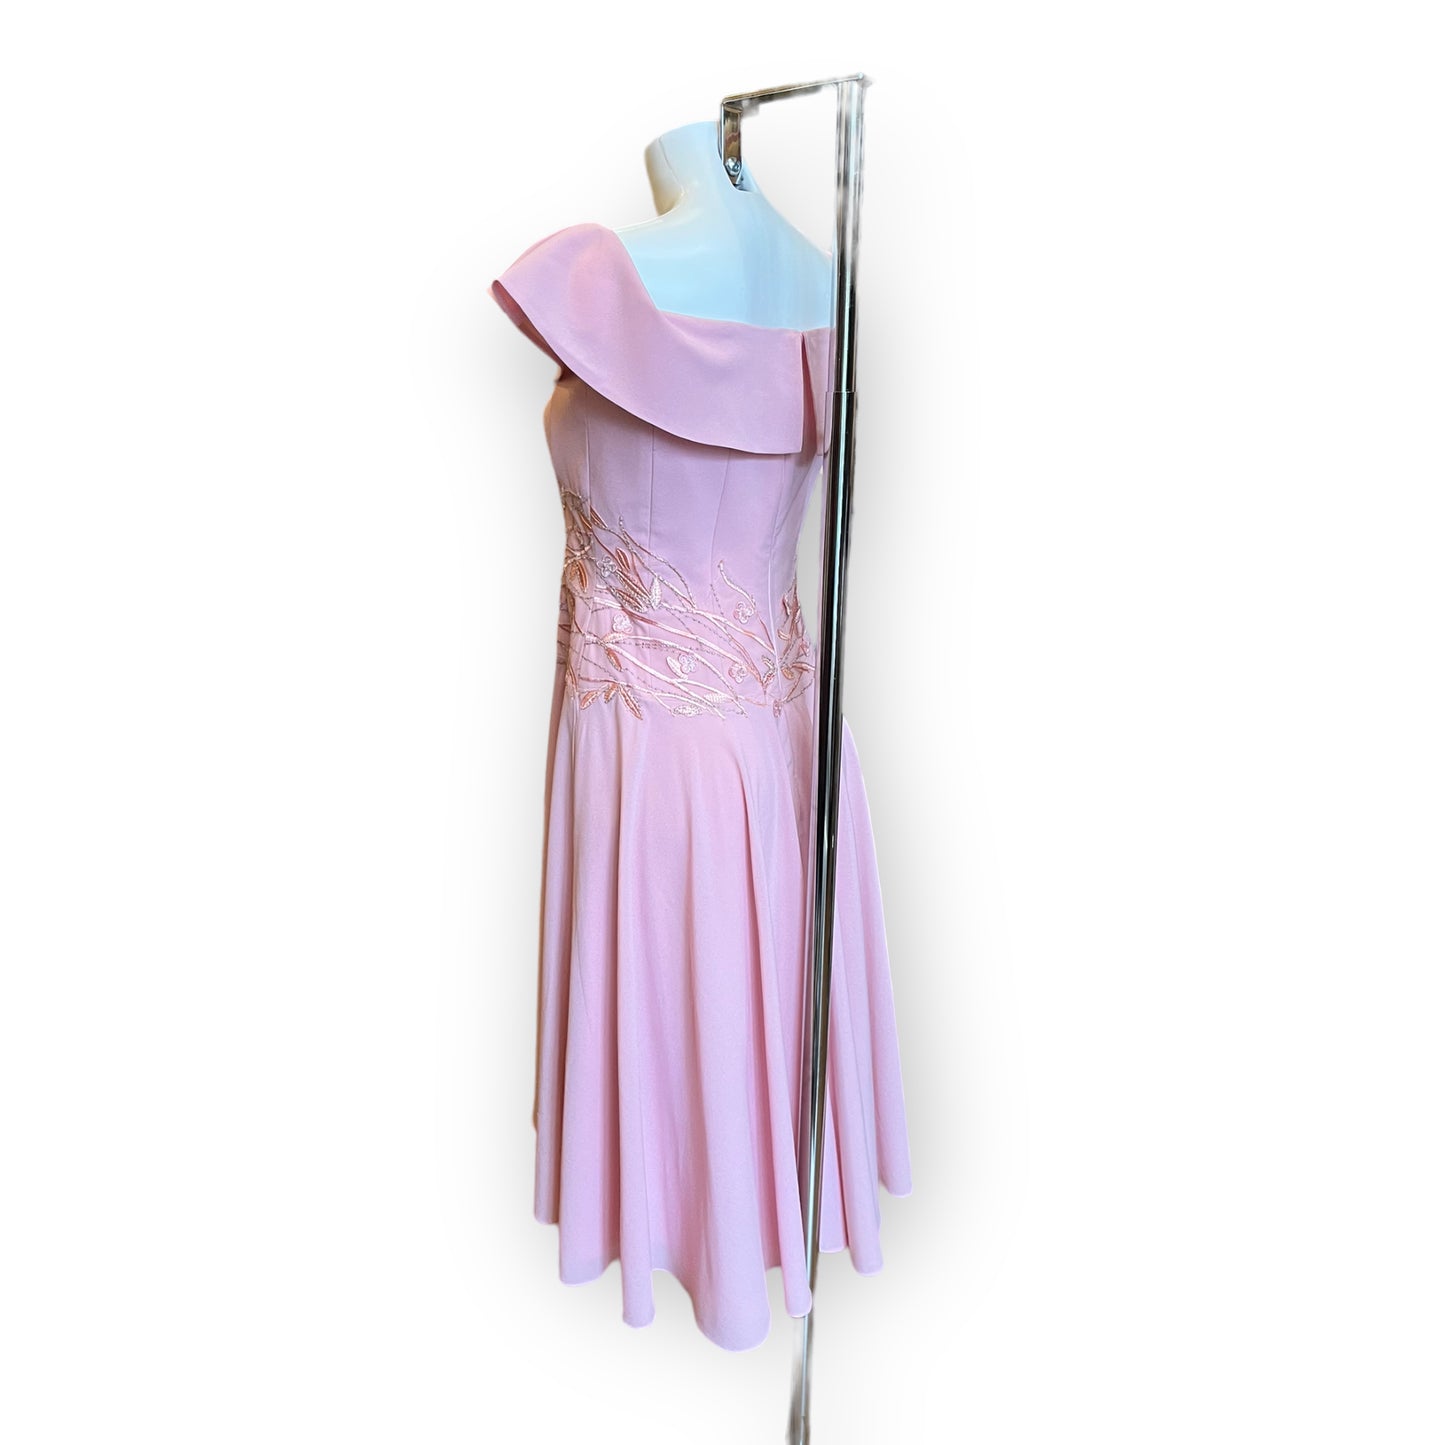 Bespoke Katherine Morrison Pink Floral Dress